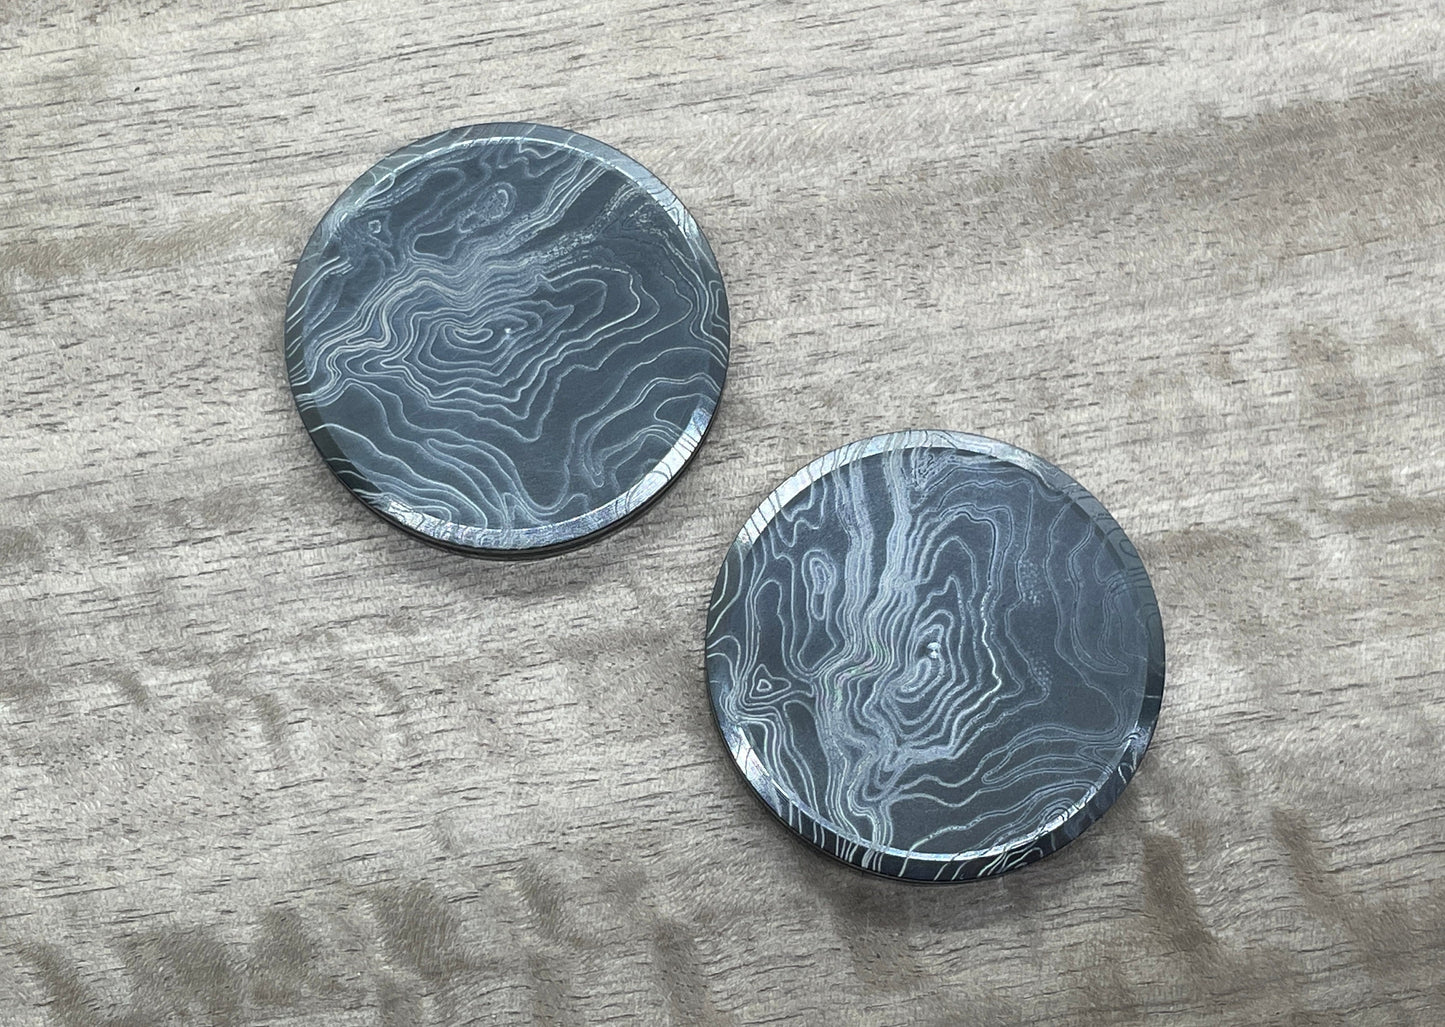 Black Zirconium TOPO HAPTIC Coins CLICKY Haptic Slider Fidget